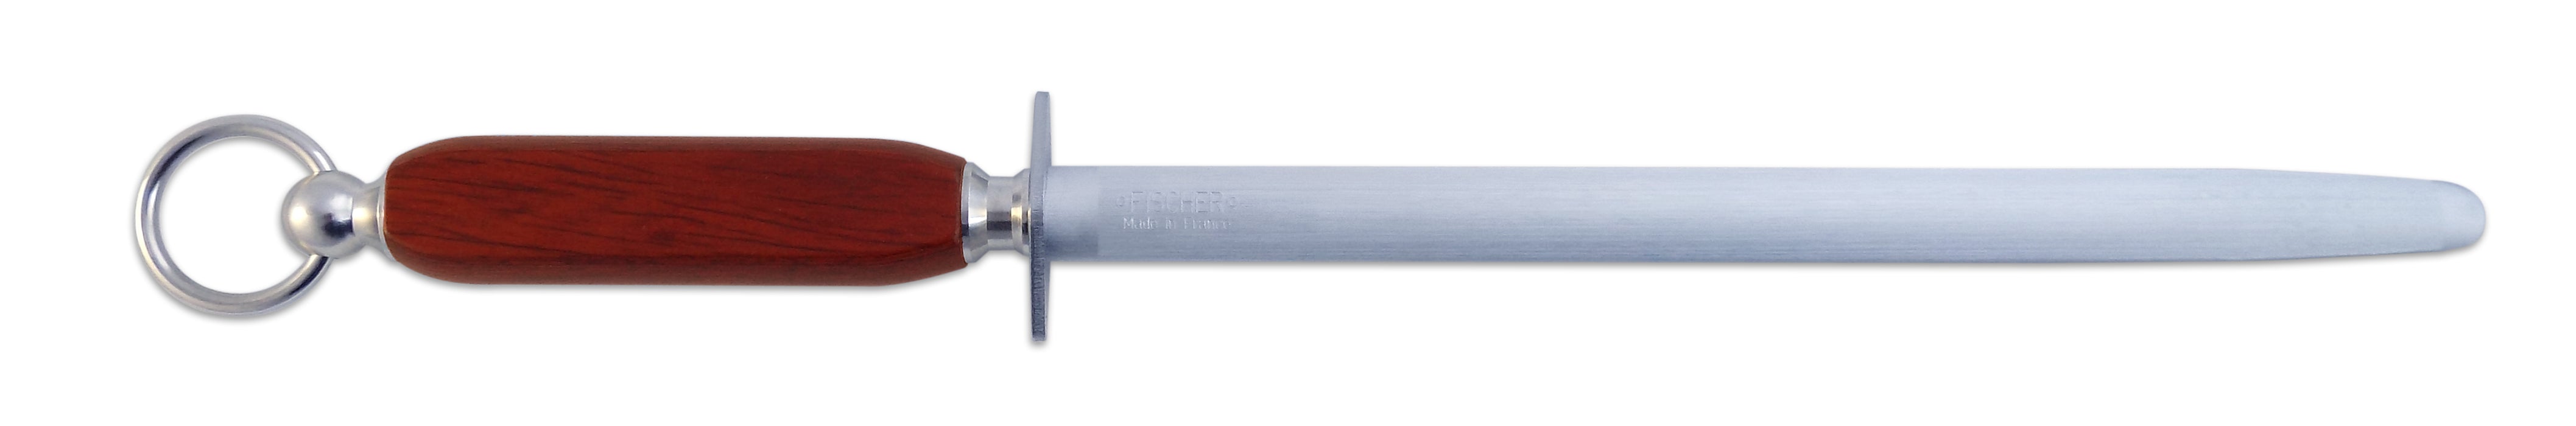 Frischer- Sharpening Steel C2135 - Wooden handle